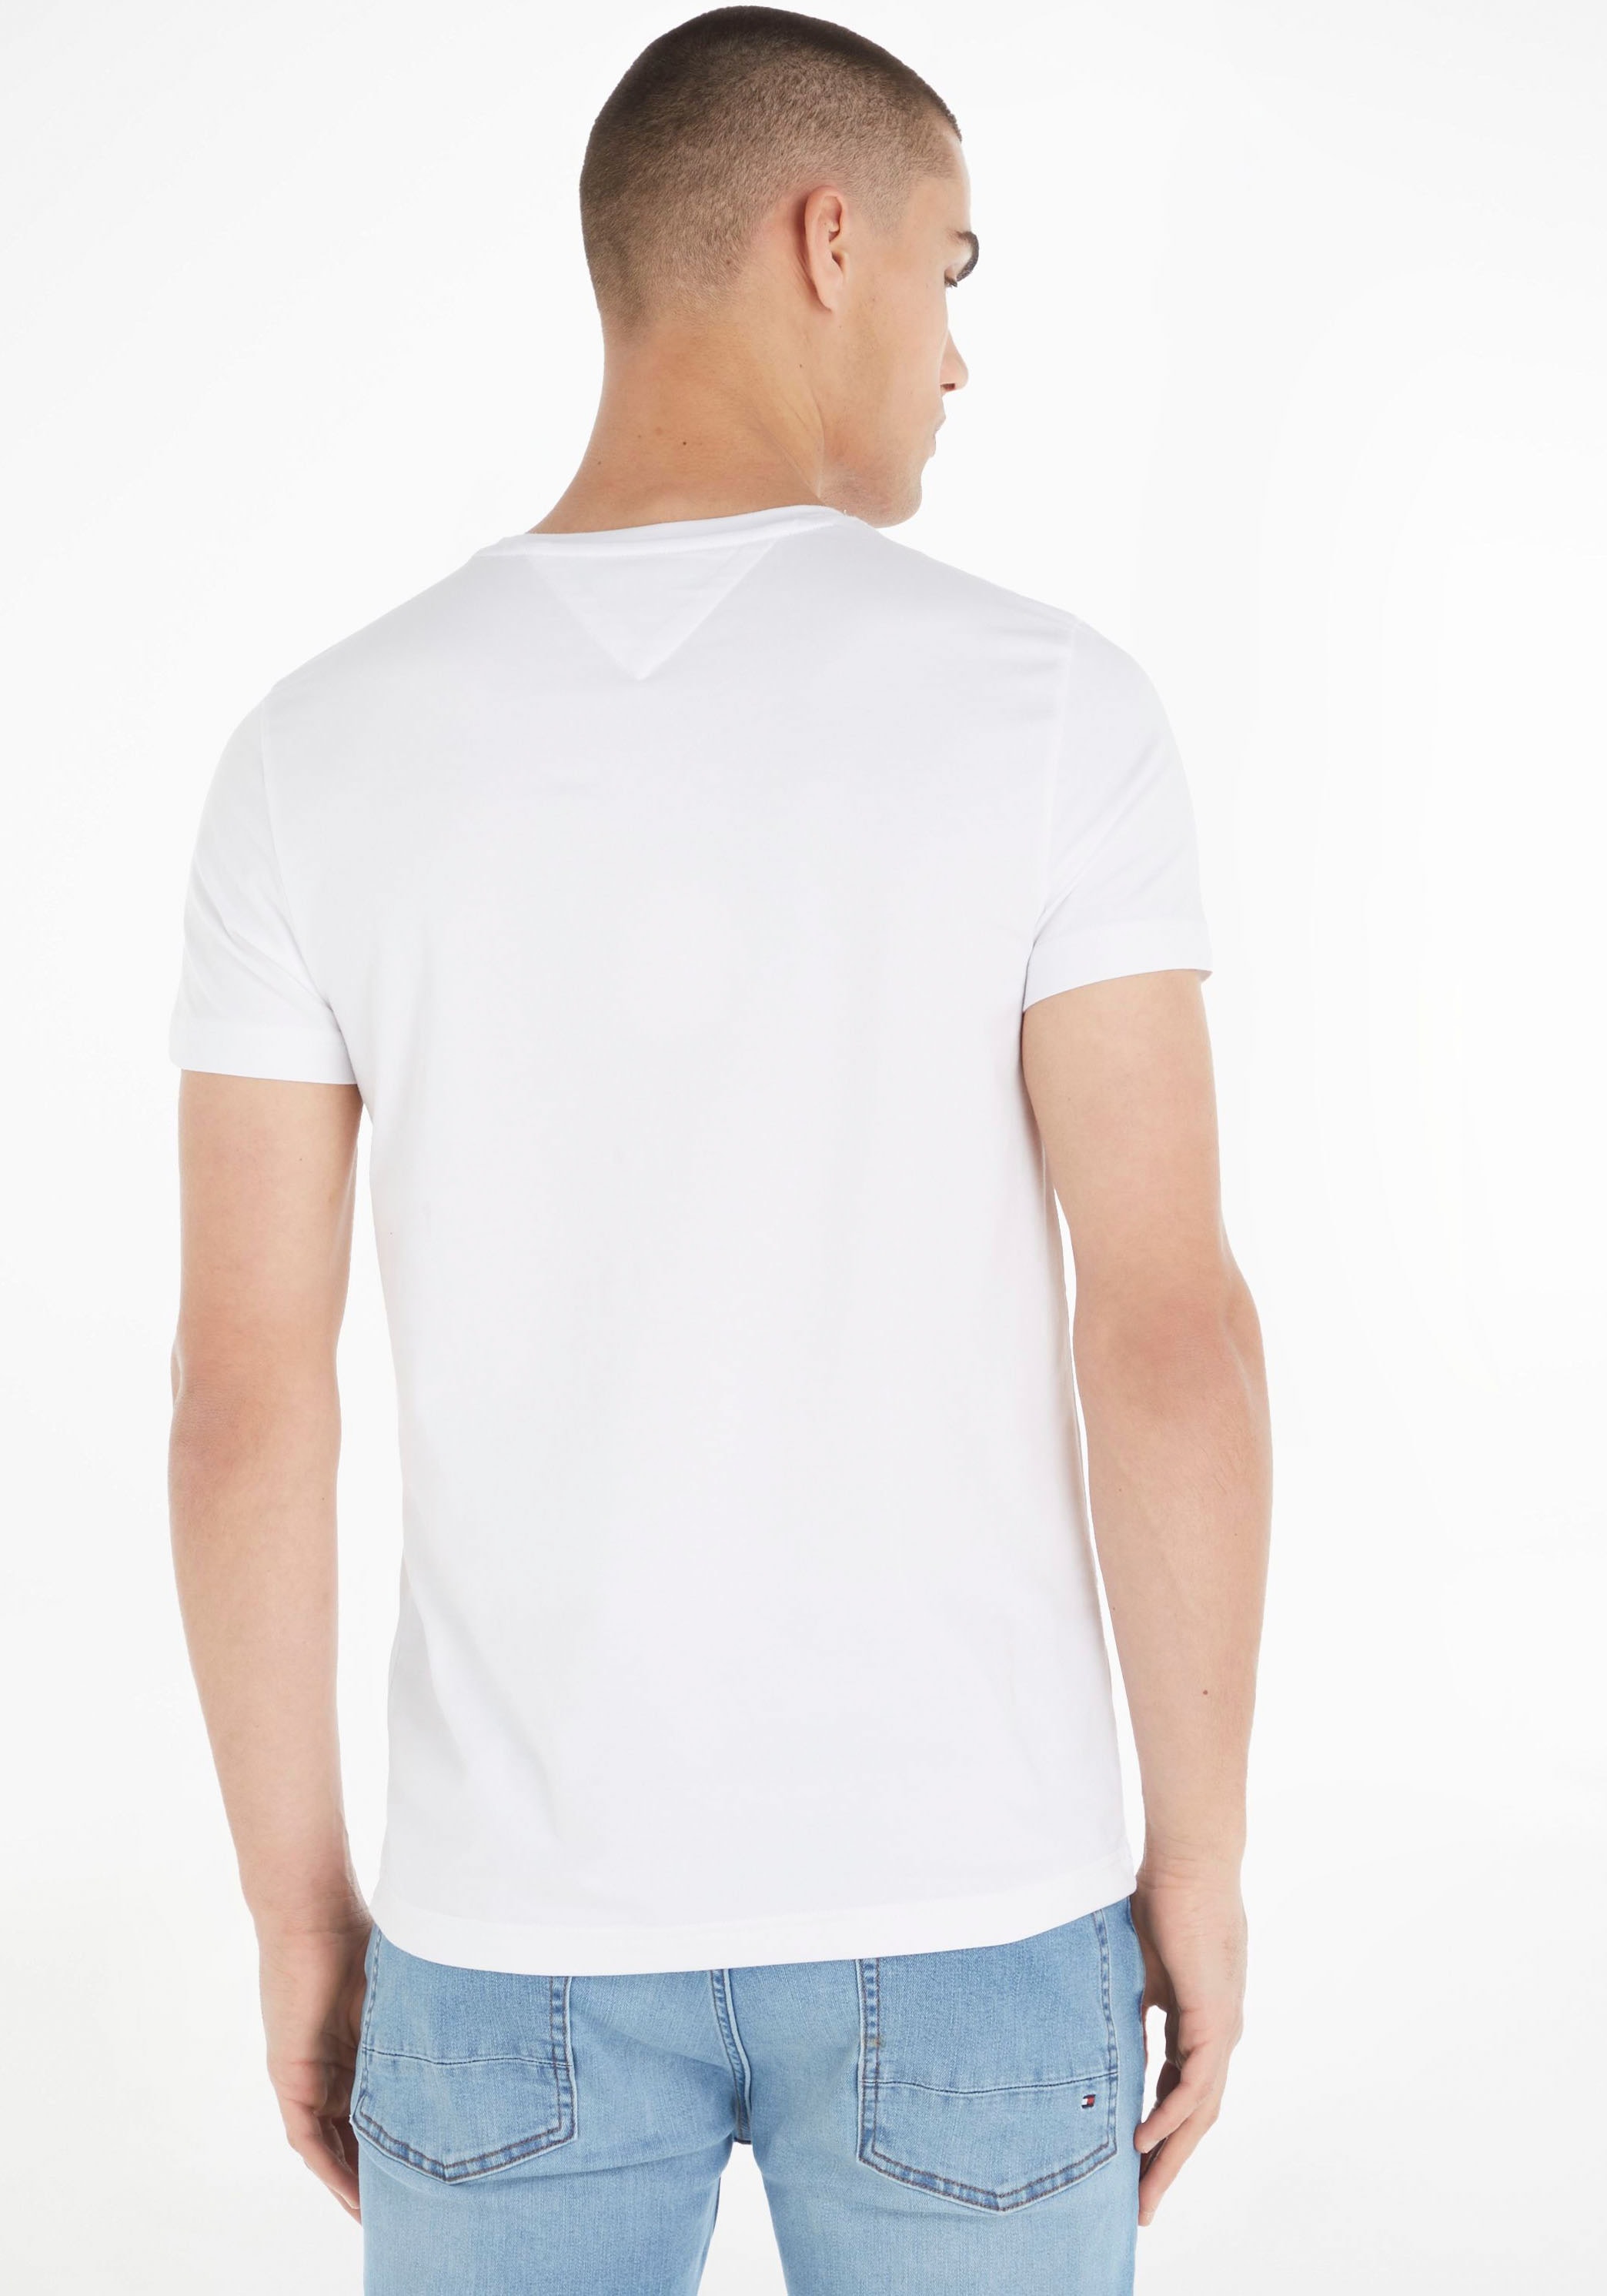 ➤ Shirts versandkostenfrei - ohne Mindestbestellwert kaufen